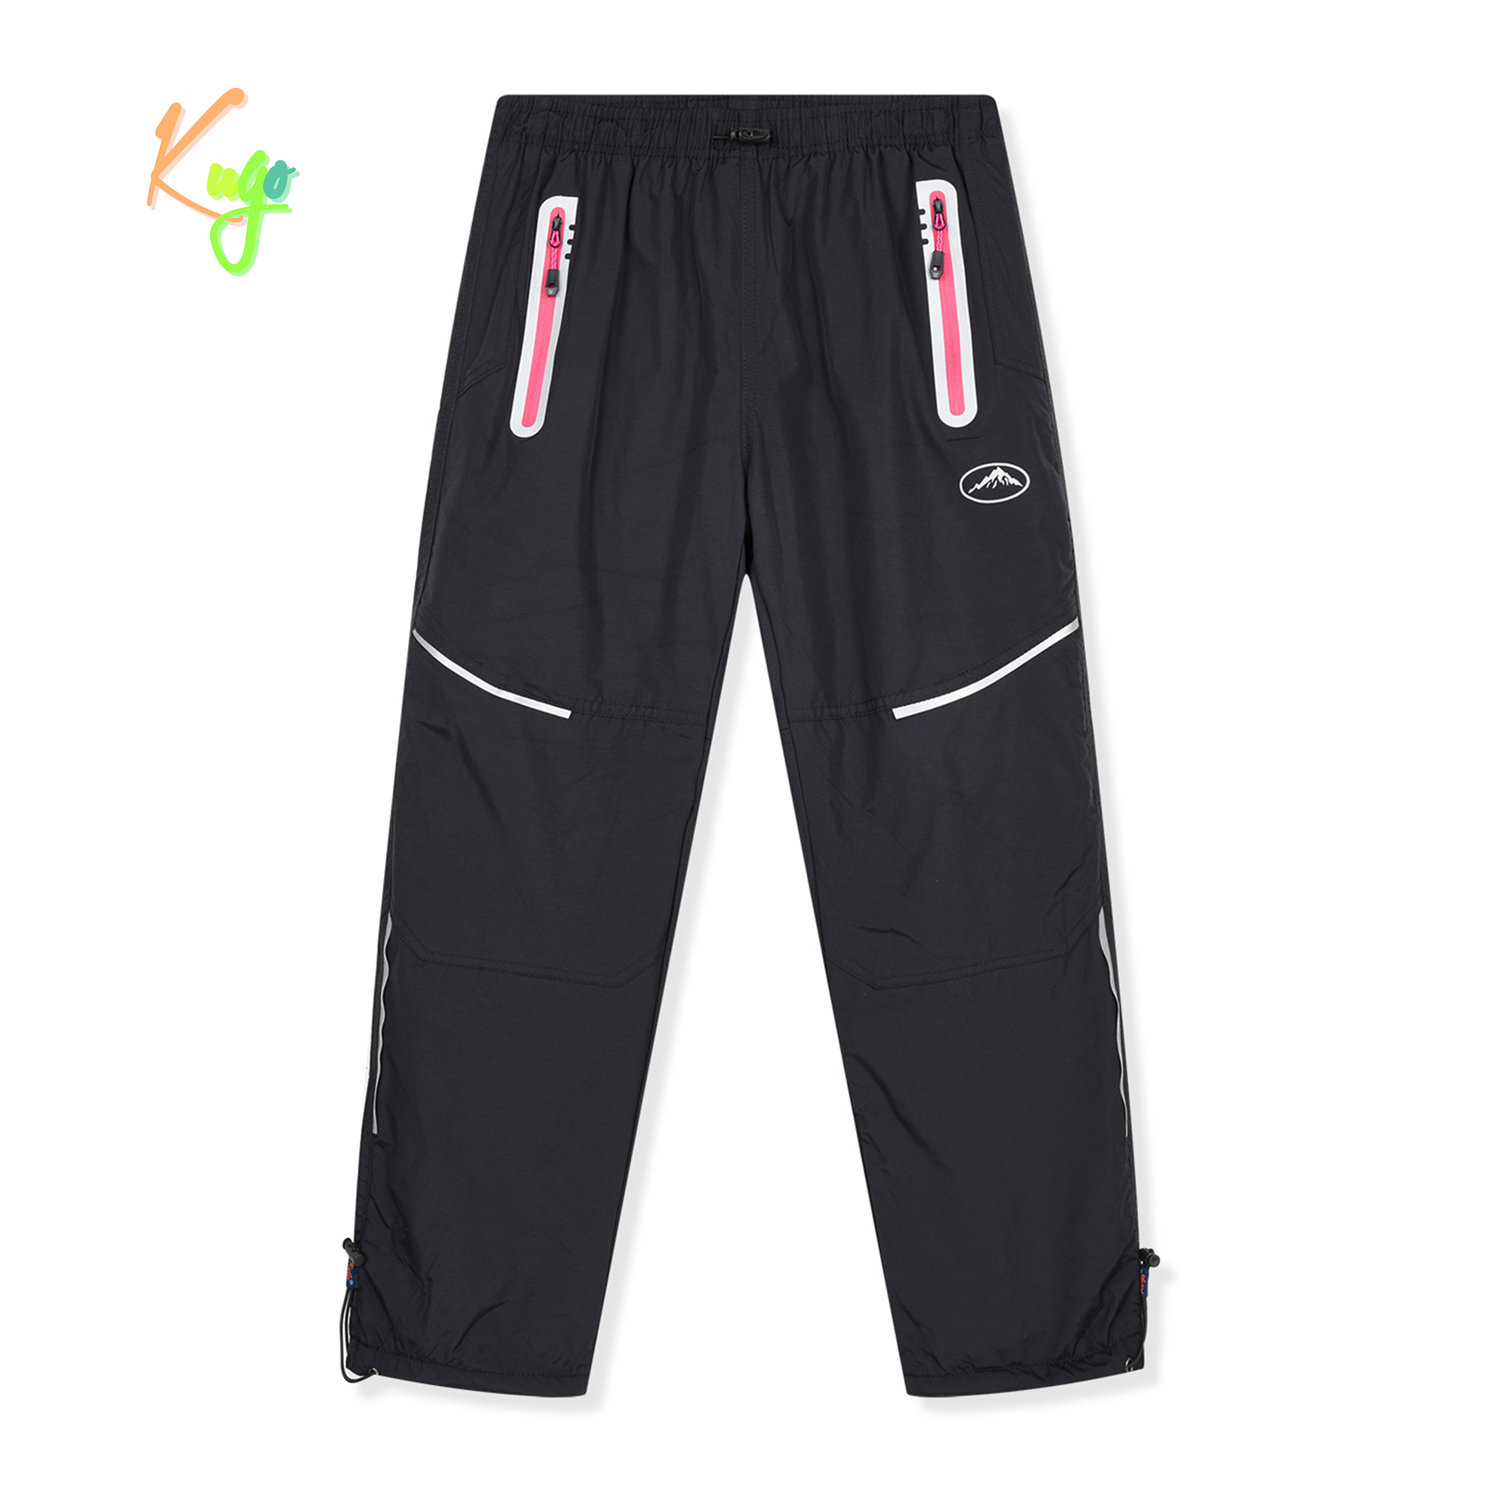 Dívčí šusťákové kalhoty, zateplené - KUGO DK8238, černá / růžové zipy Barva: Černá, Velikost: 164